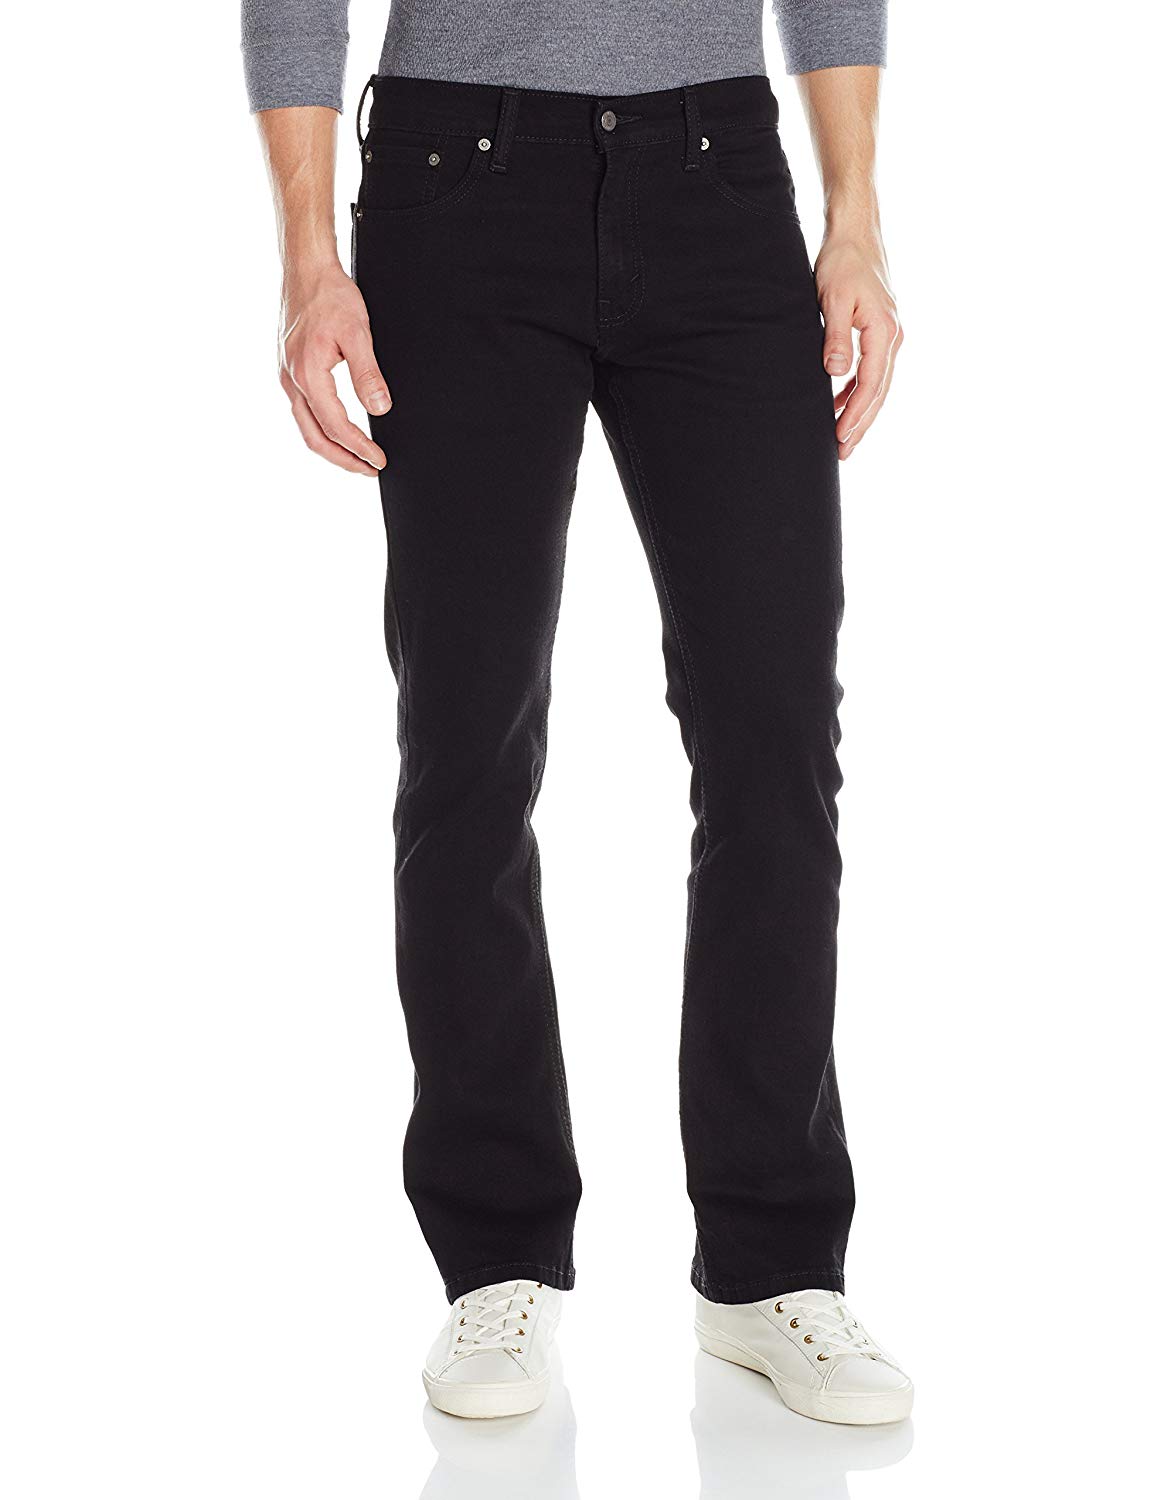 Levi's Men's 527 Slim Bootcut Jean, Native Cali -, Black, Size 34W x